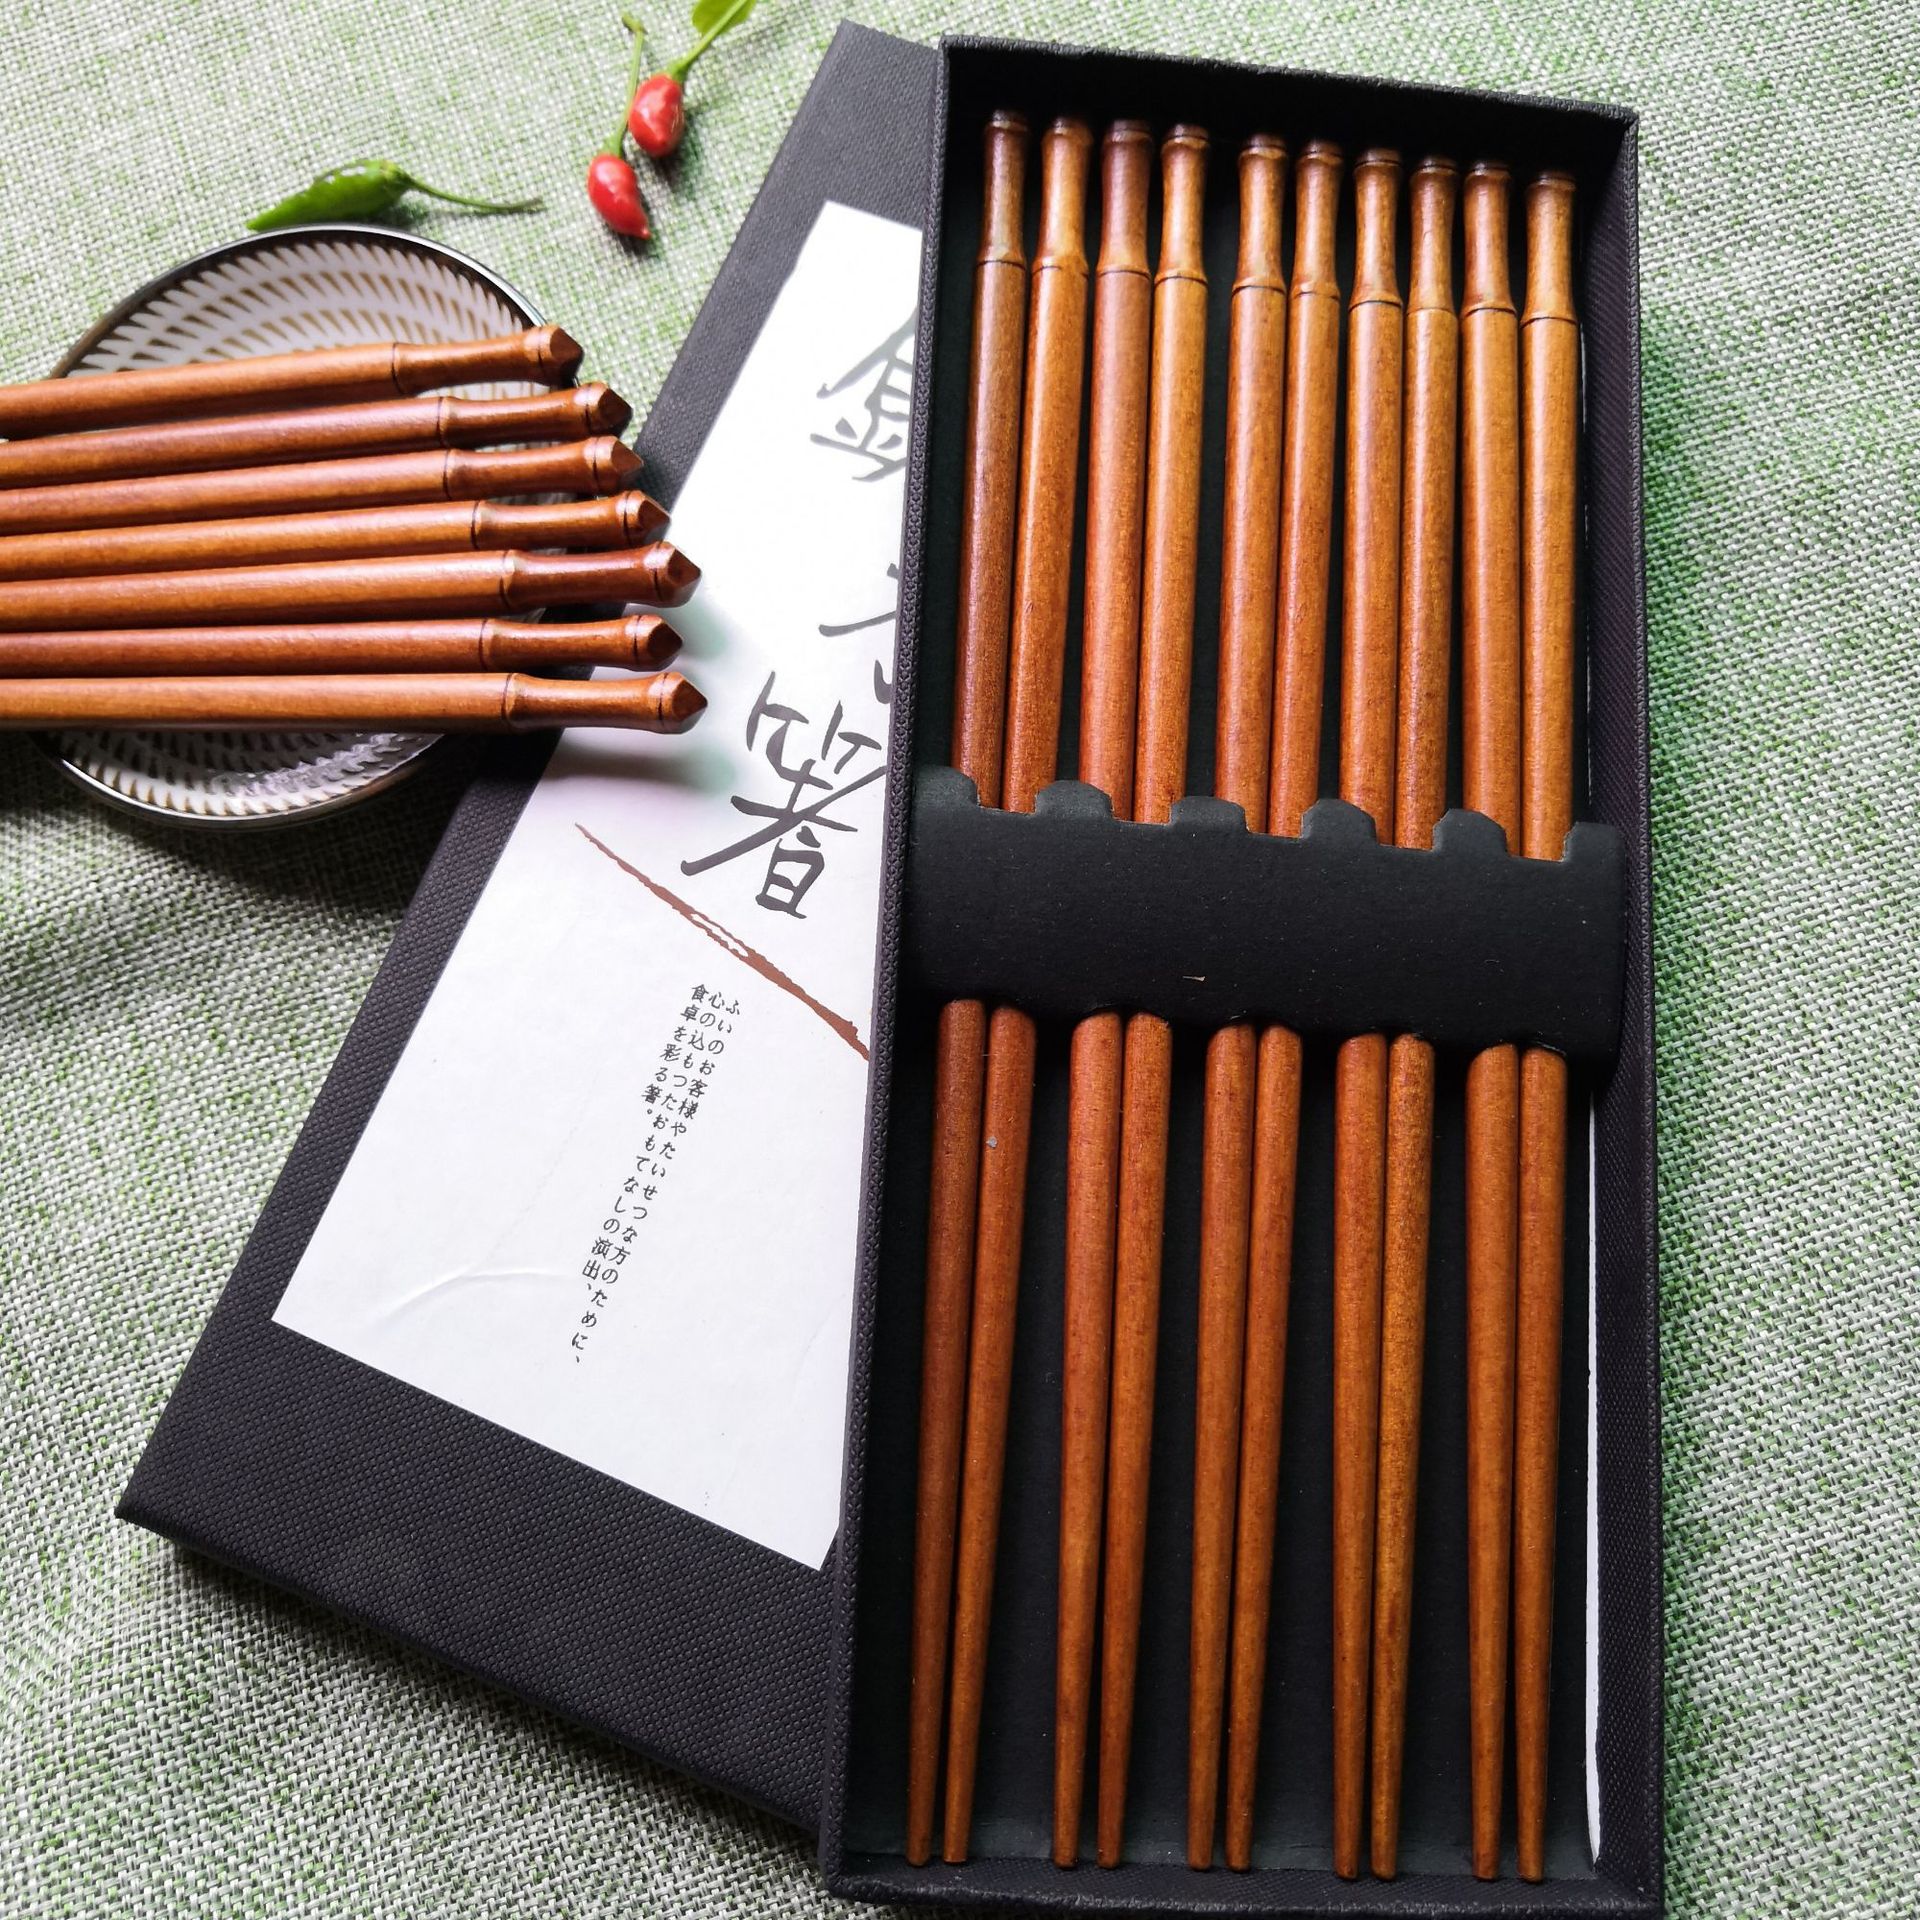 厂家批发 日式木筷子五双礼盒套装创意筷子 家用工艺筷子可订